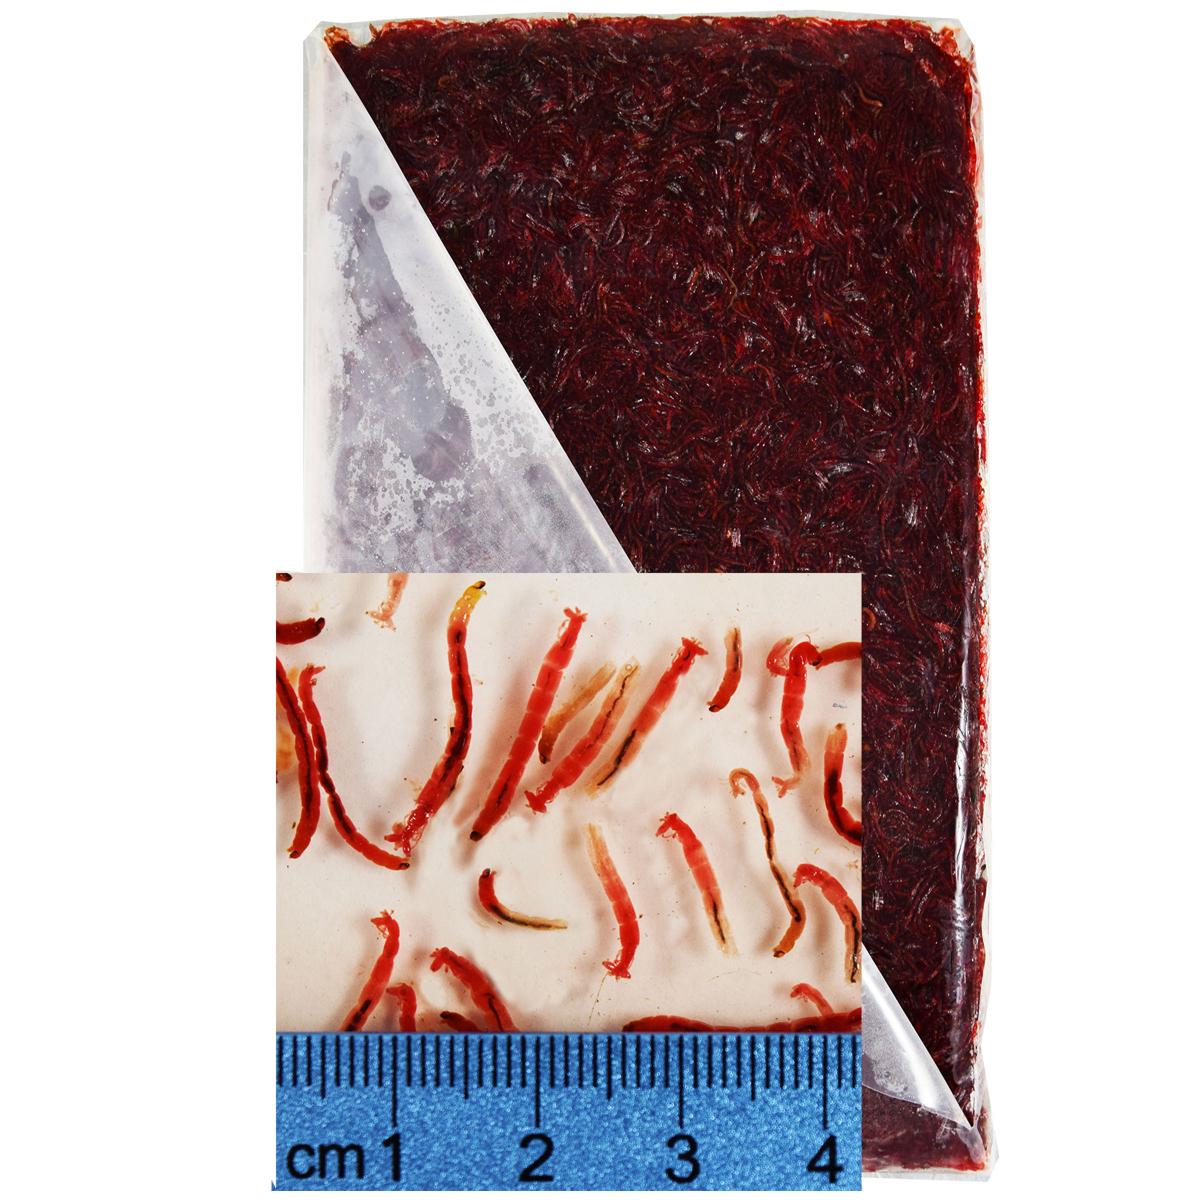 Frozen Bloodworm flat packs, 10 x 500 g. (5 kg./11 lbs. net weight)